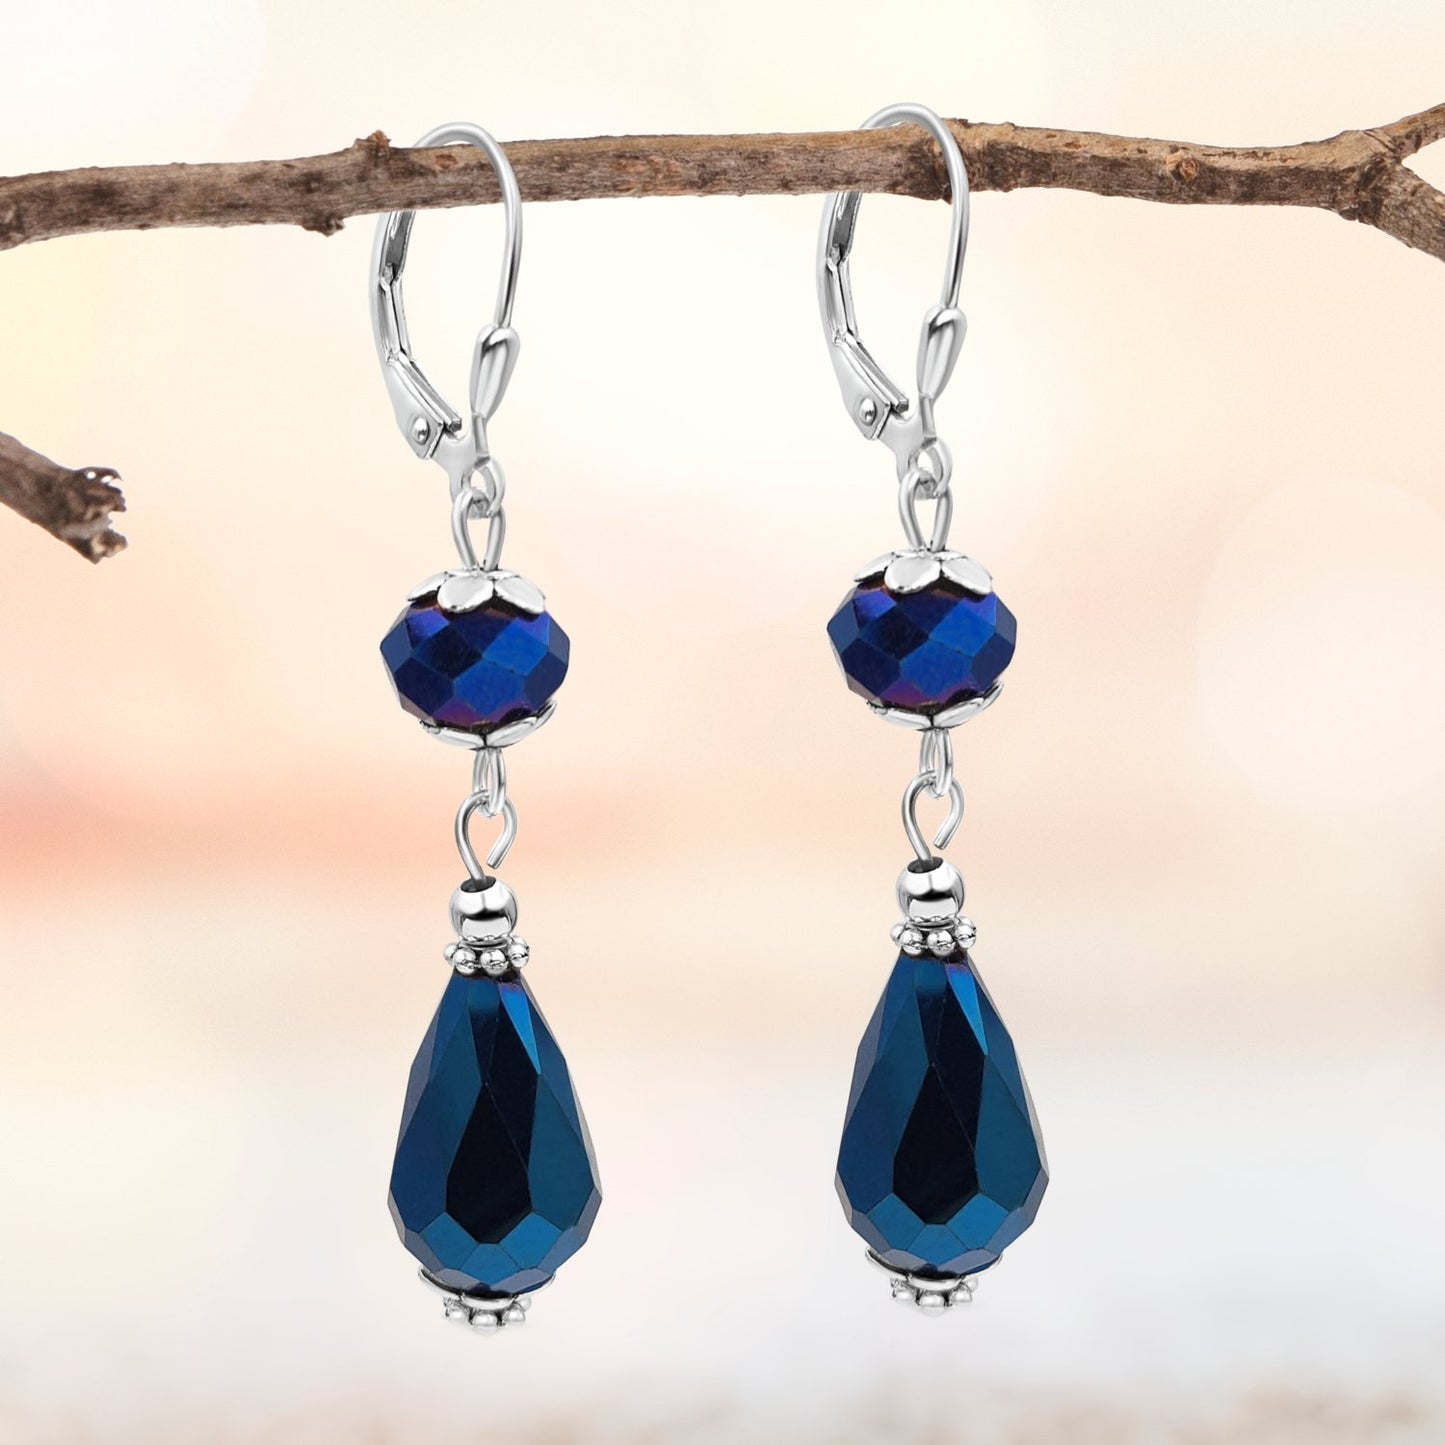 BESHEEK Luster Blue Crystal Glass Teardrop Leverback Earrings | Handmade Hypoallergenic Boho Beach Gala Wedding Style Fashion Earrings